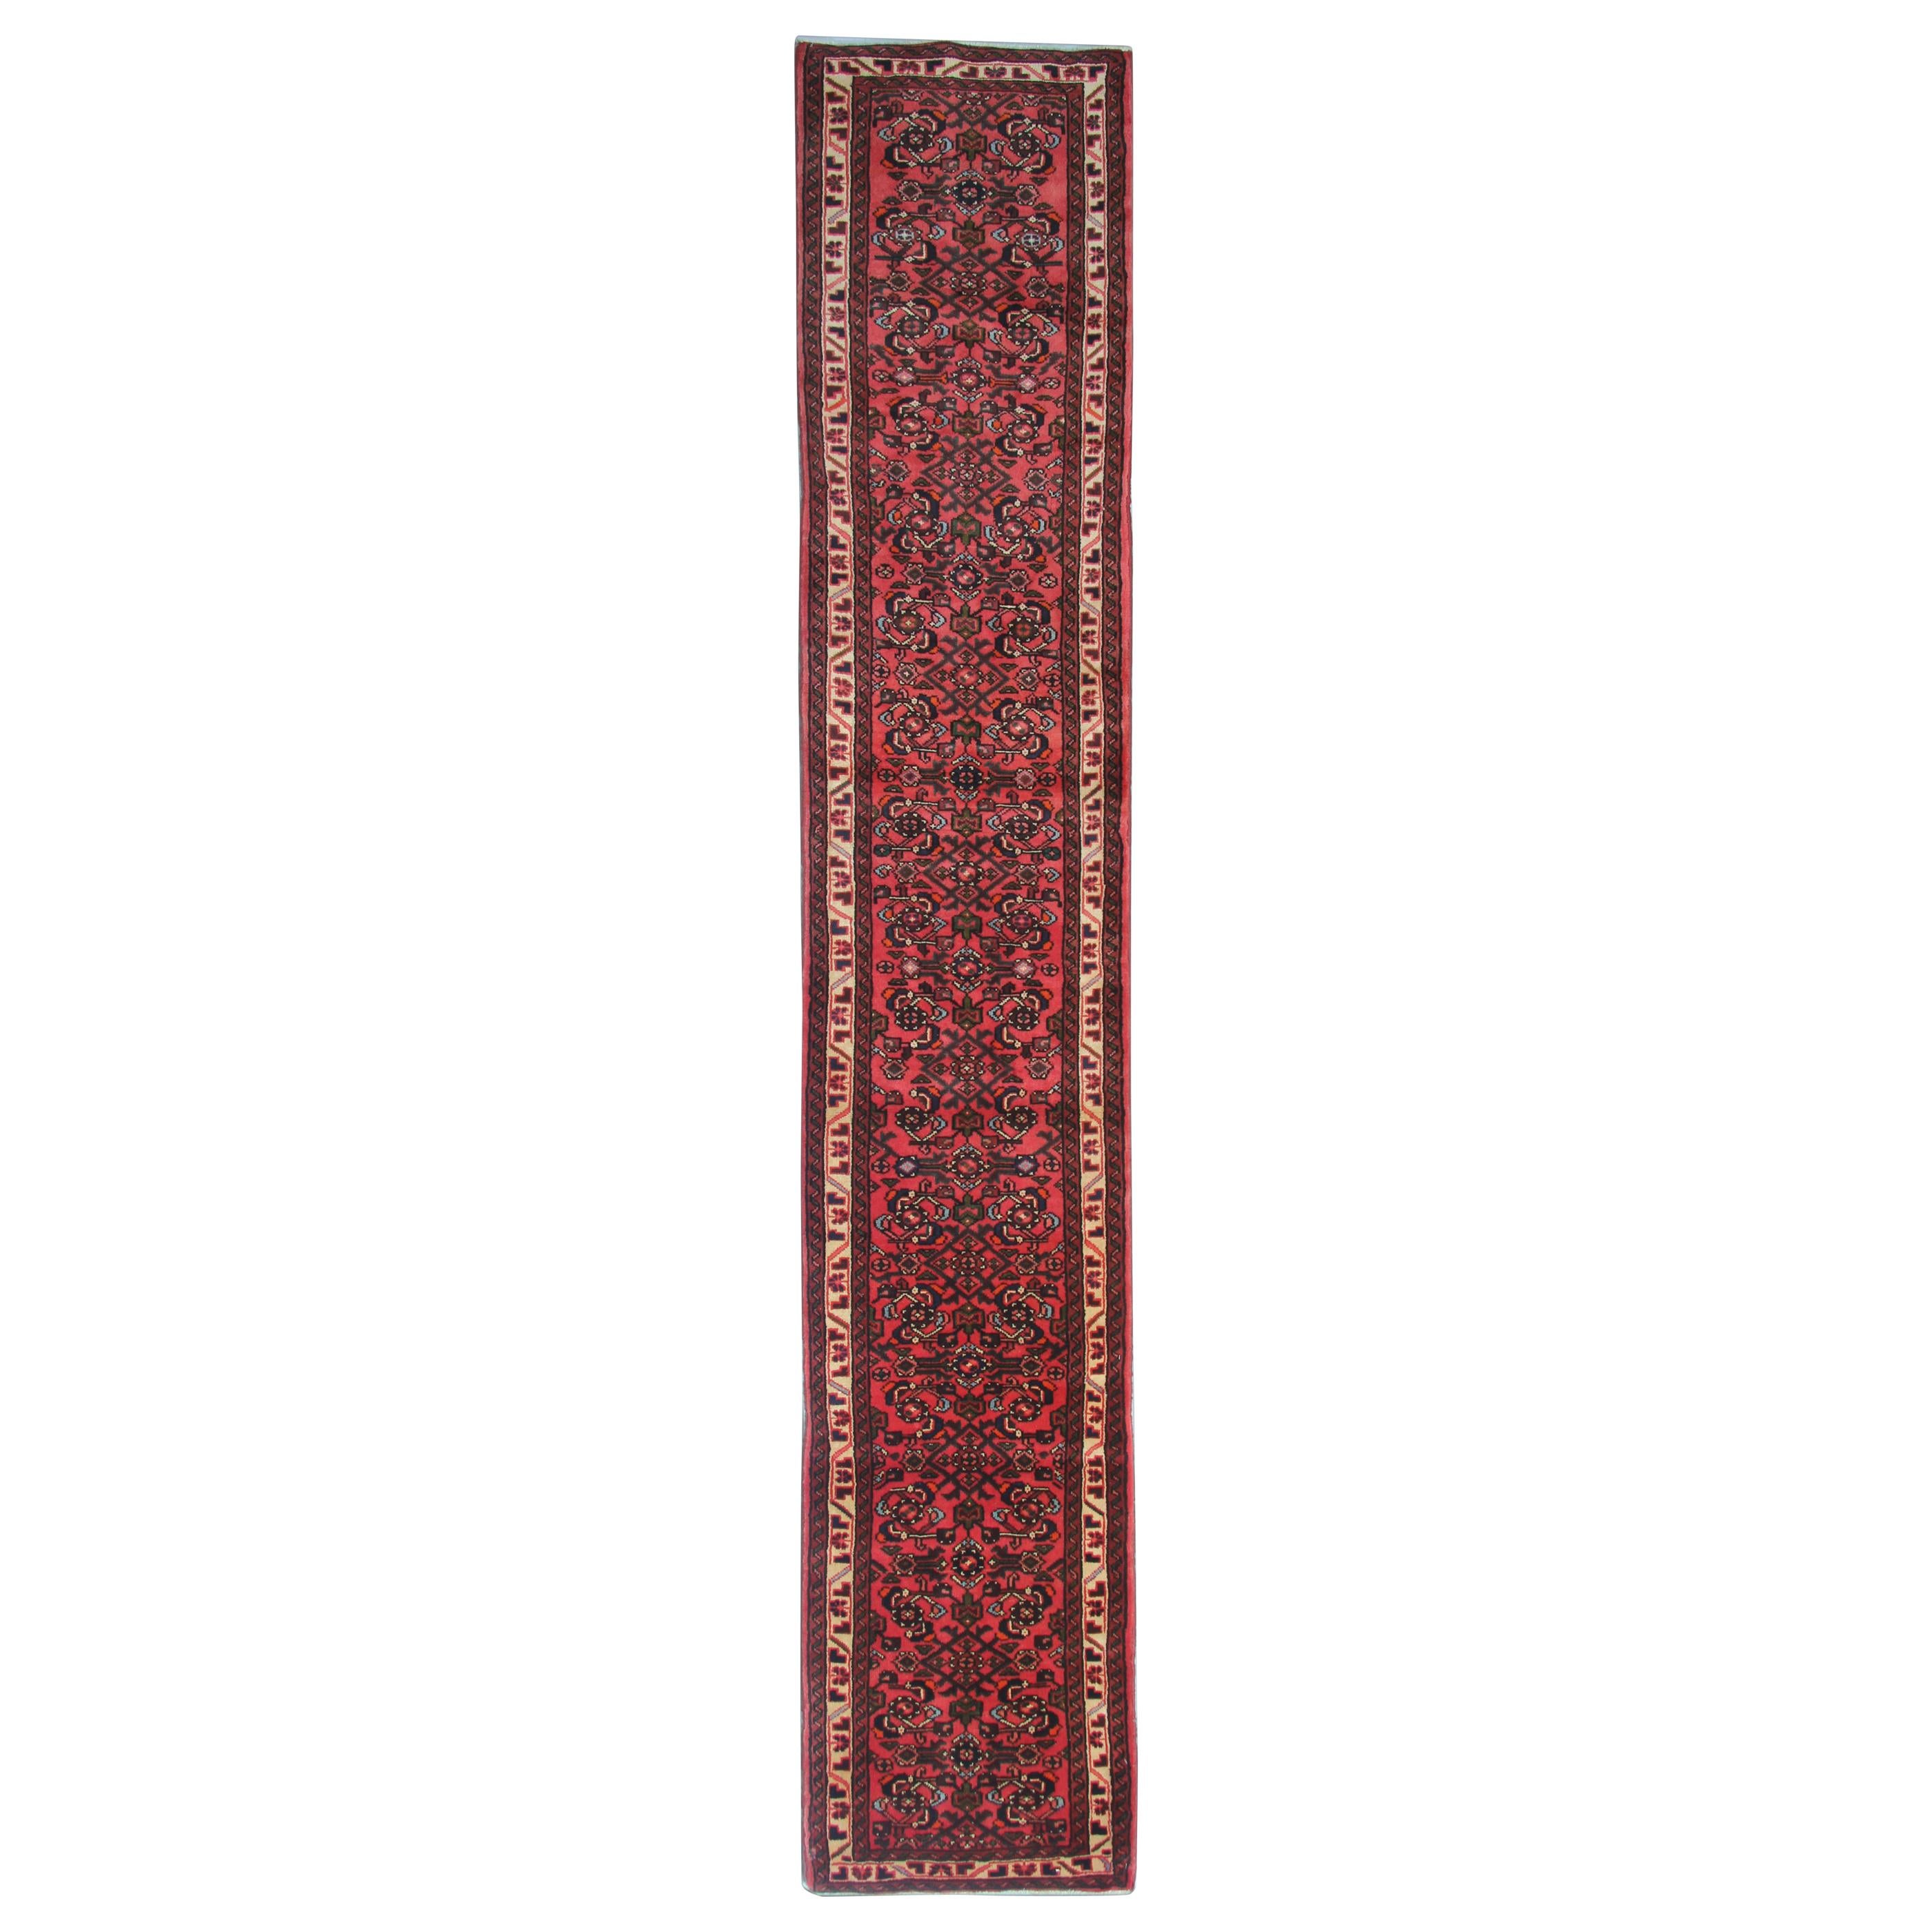 Handmade Carpet Oriental Rust, Red Wool Rustic Runner Rug 400x70cm For Sale